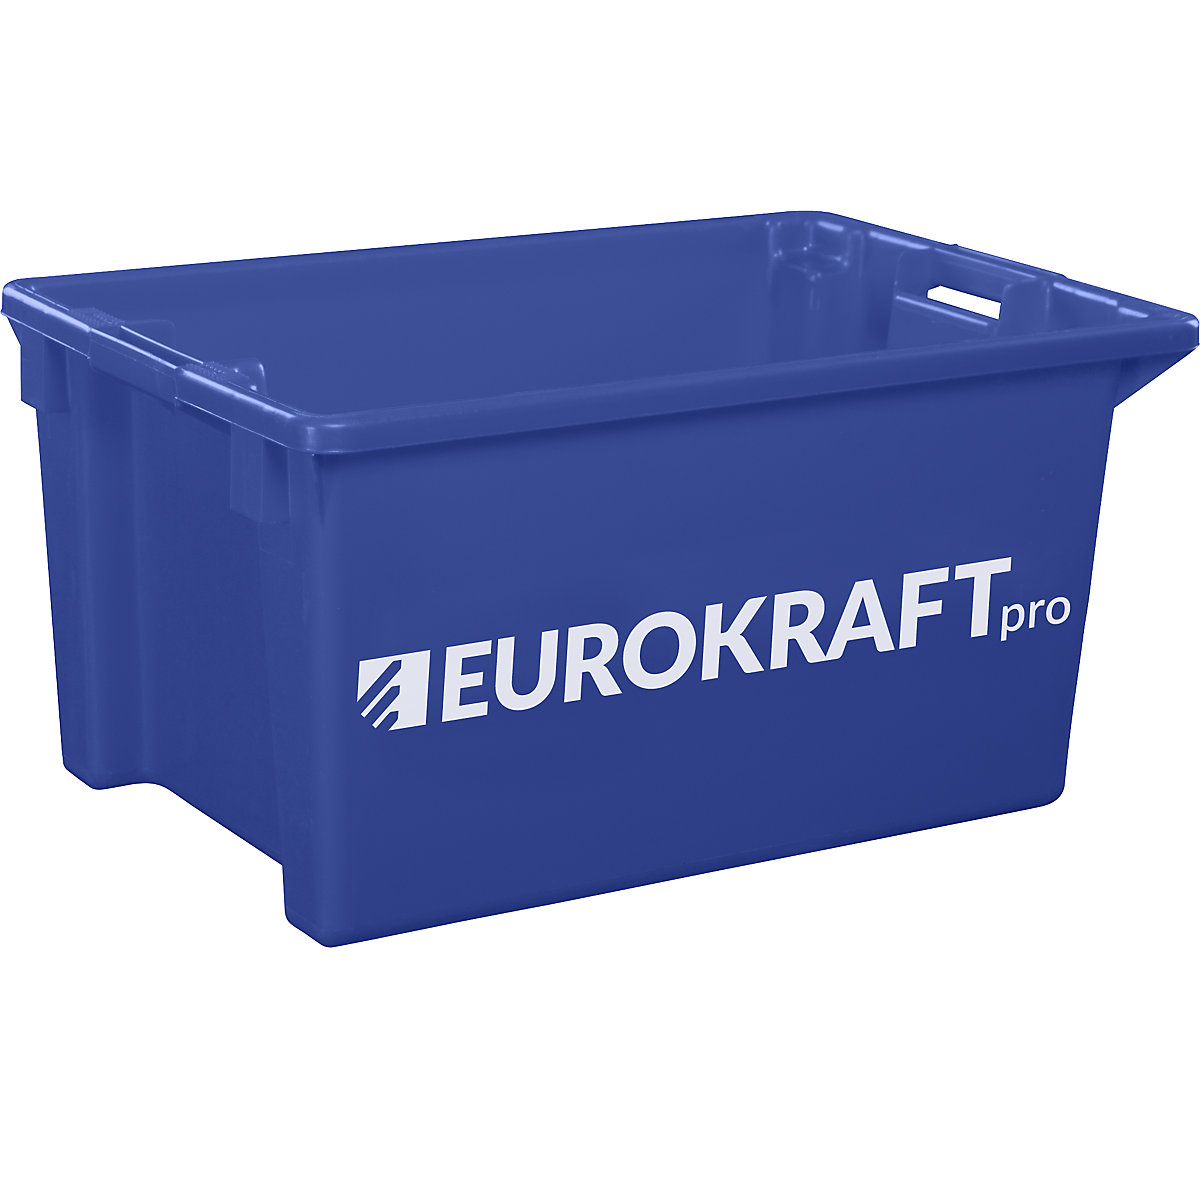 EUROKRAFTpro – Spremnik za slaganje od polipropilena pogodnog za kontakt s prehrambenim proizvodima, volumen 70 l, pak. 2 kom., zatvorene stijenke i dno, u plavoj boji